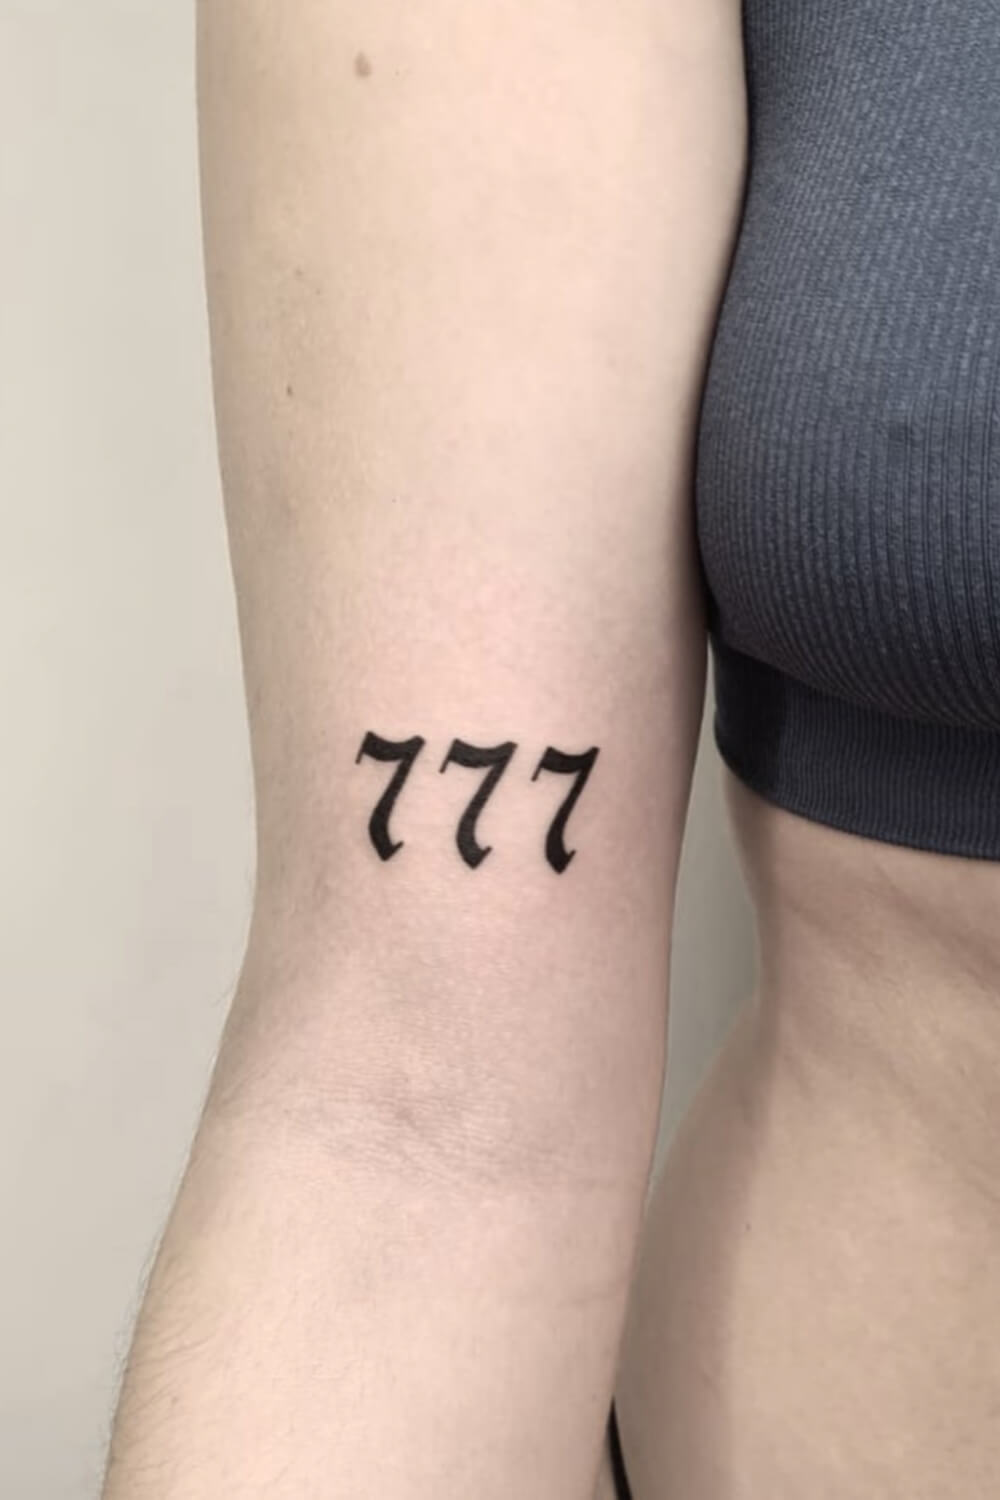 Best 777 Tattoo